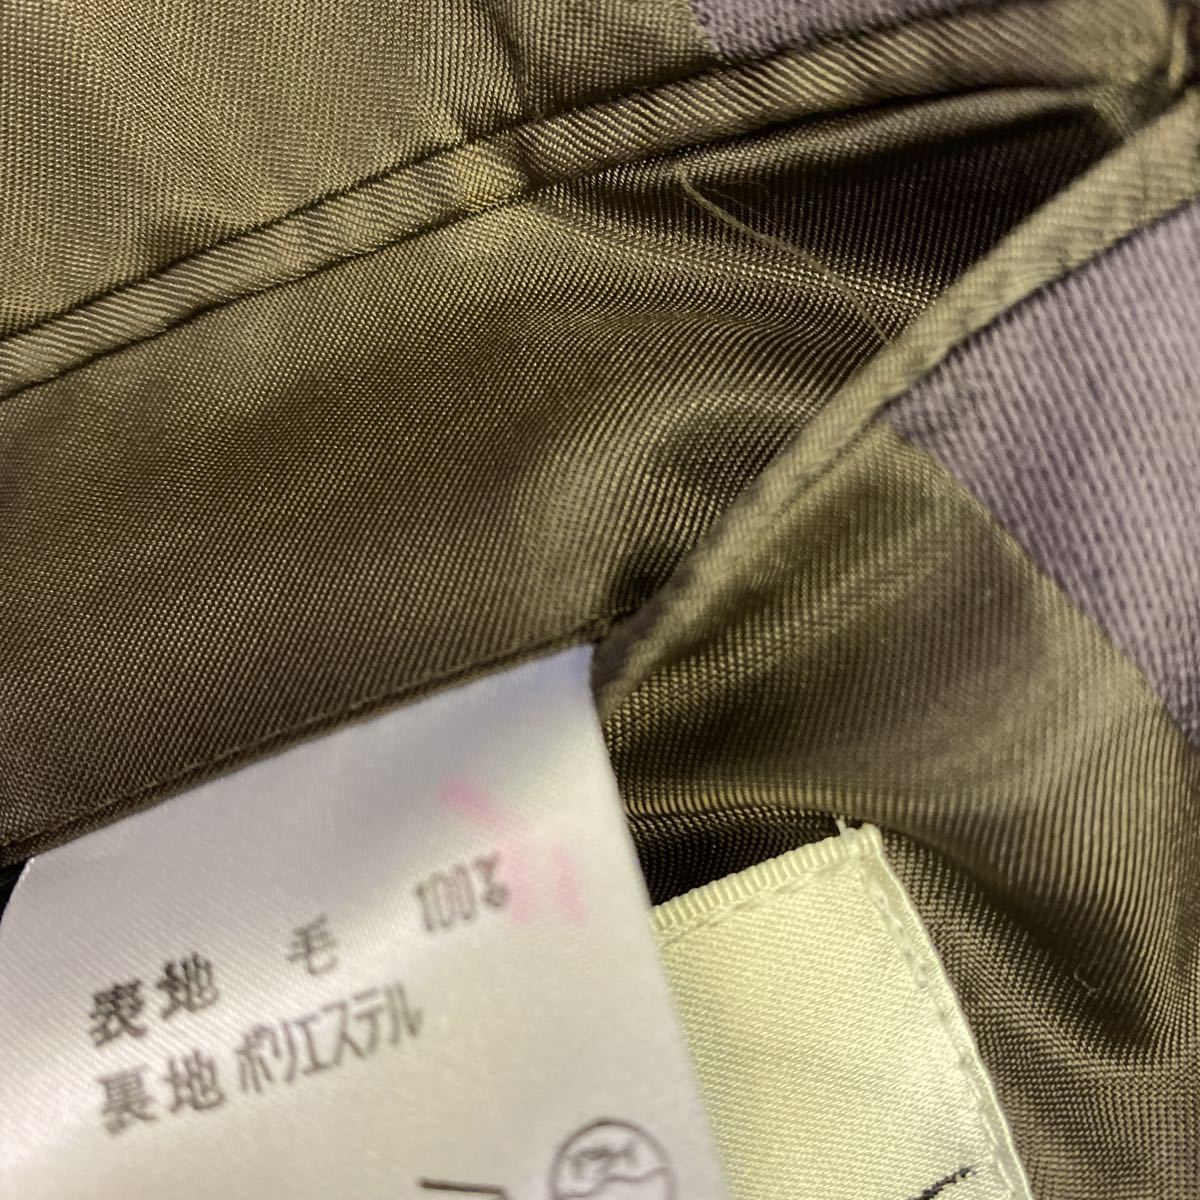  новый товар не использовался с биркой супер-скидка сделано в Японии tailored jacket 2. кнопка размер M изюм цвет no- Benz шерсть 100%